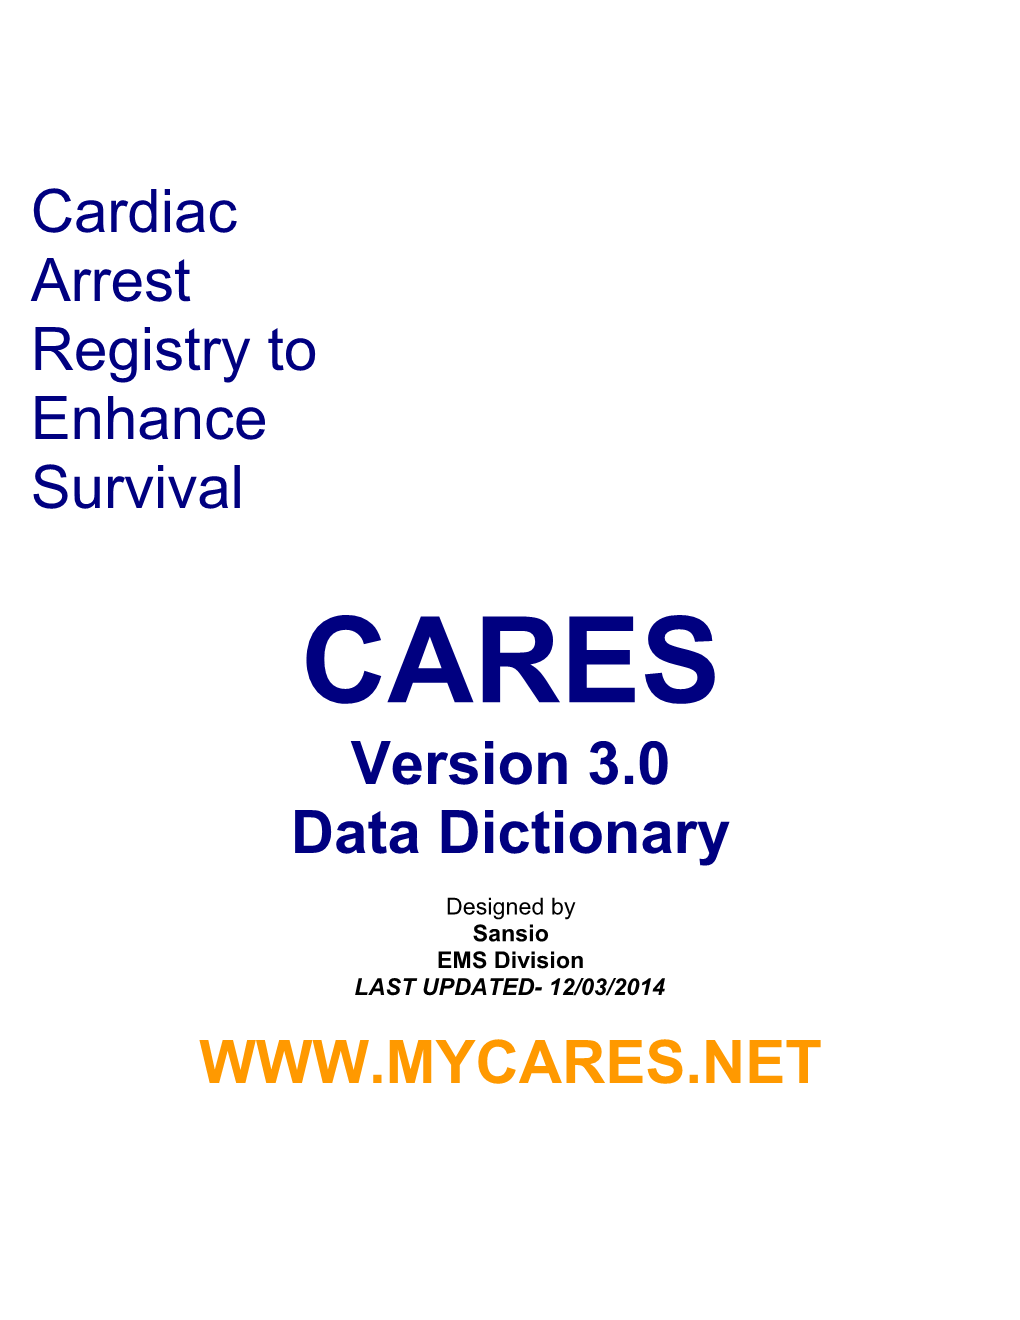 Cardiac Arrest Registry to Enhance Survival (CARES)